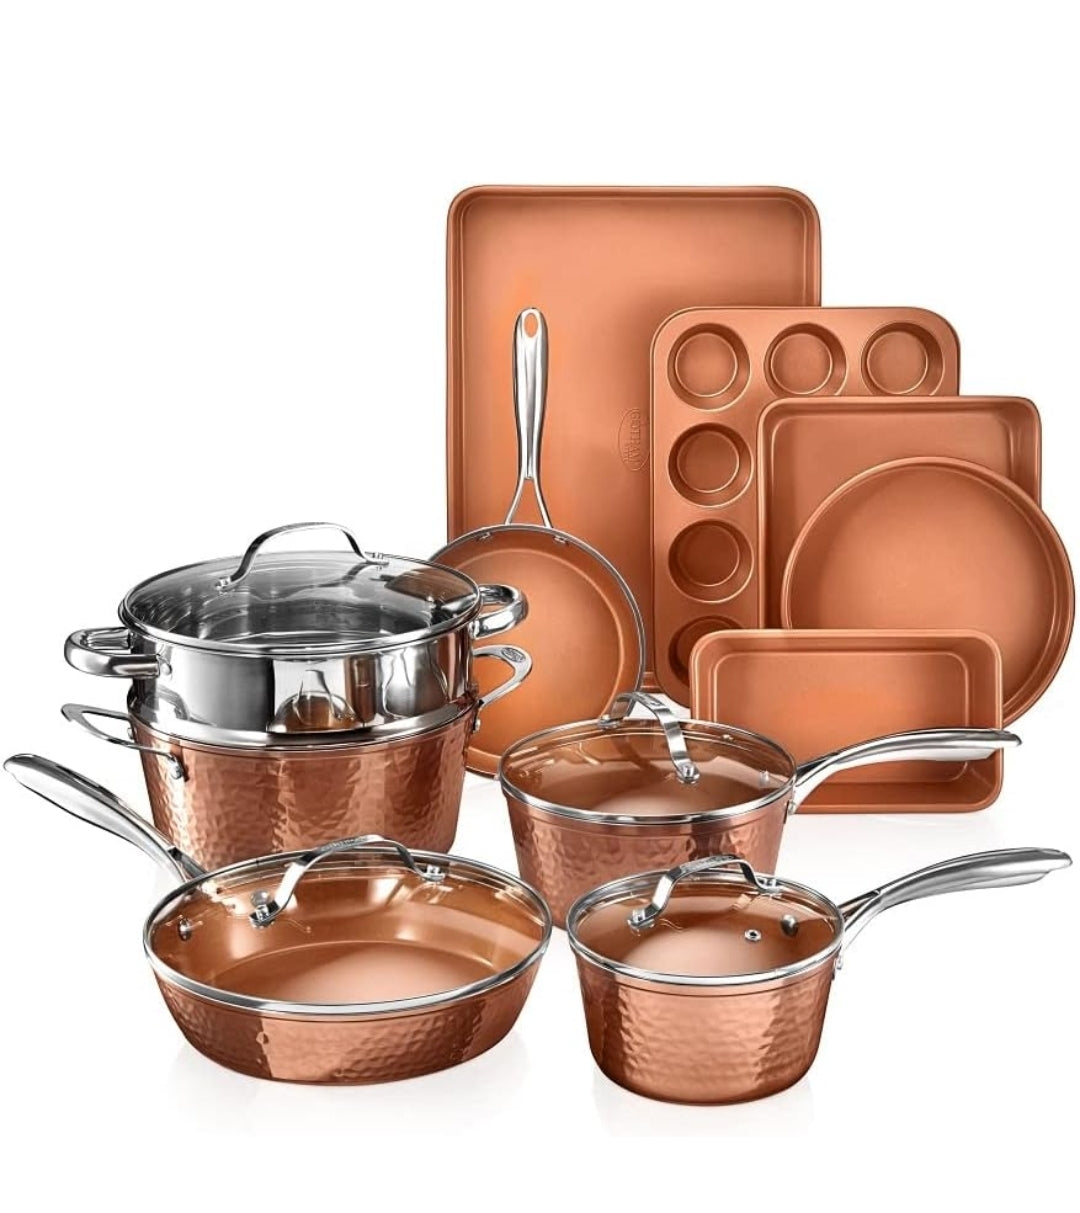 Gotham Steel Hammered Copper 20-Piece Cookware & Bakeware Set